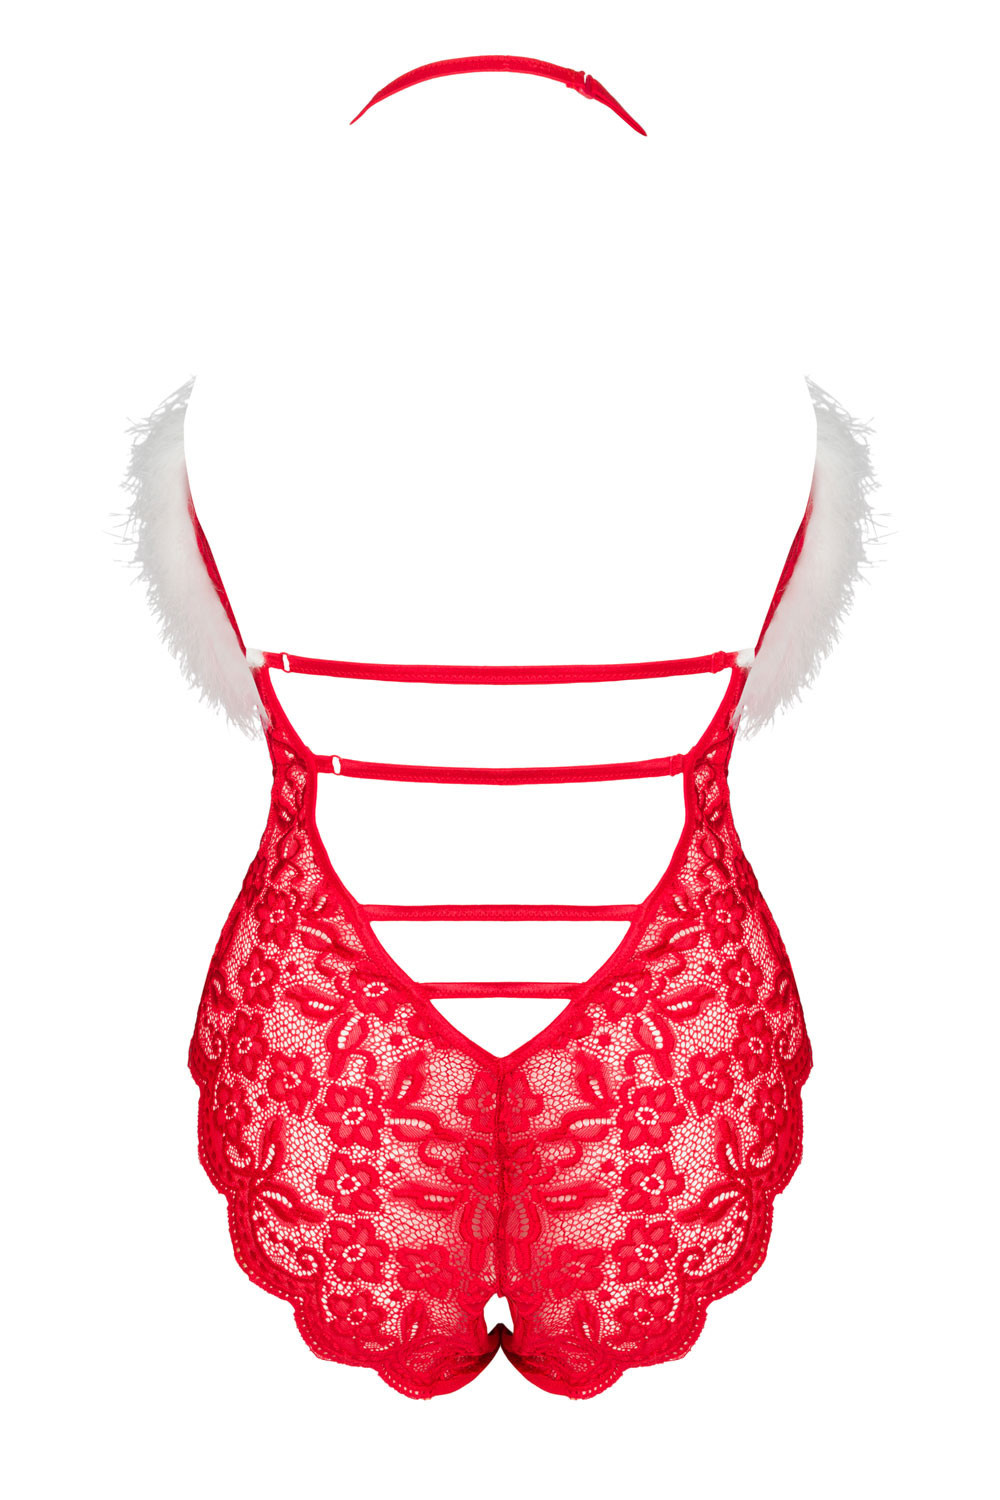 LivCo Corsetti Fashion Body Santas Lace Lady 90705 Red L/XL